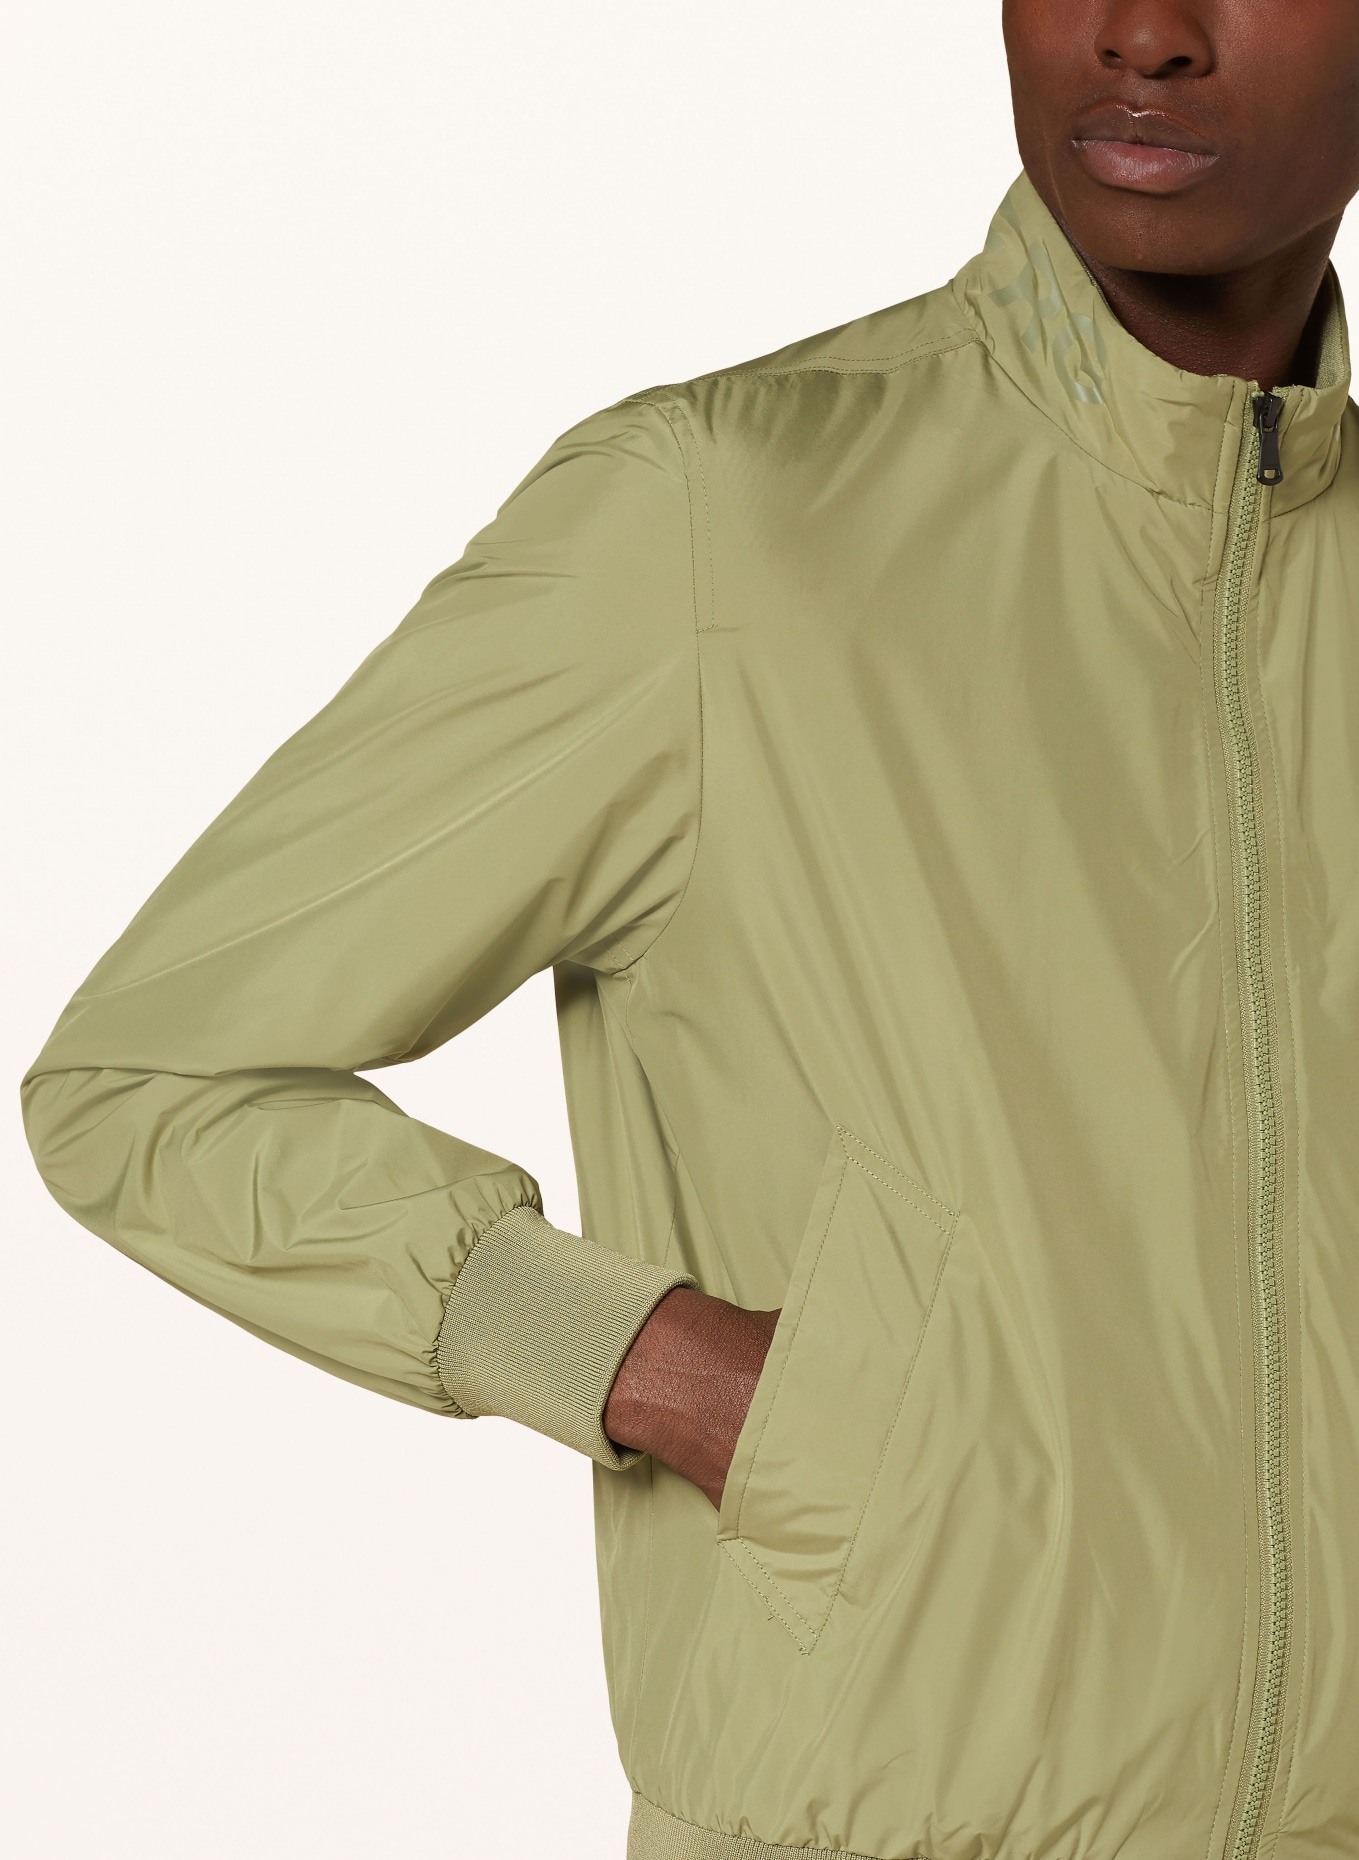 J.LINDEBERG Bomber jacket, Color: OLIVE (Image 4)